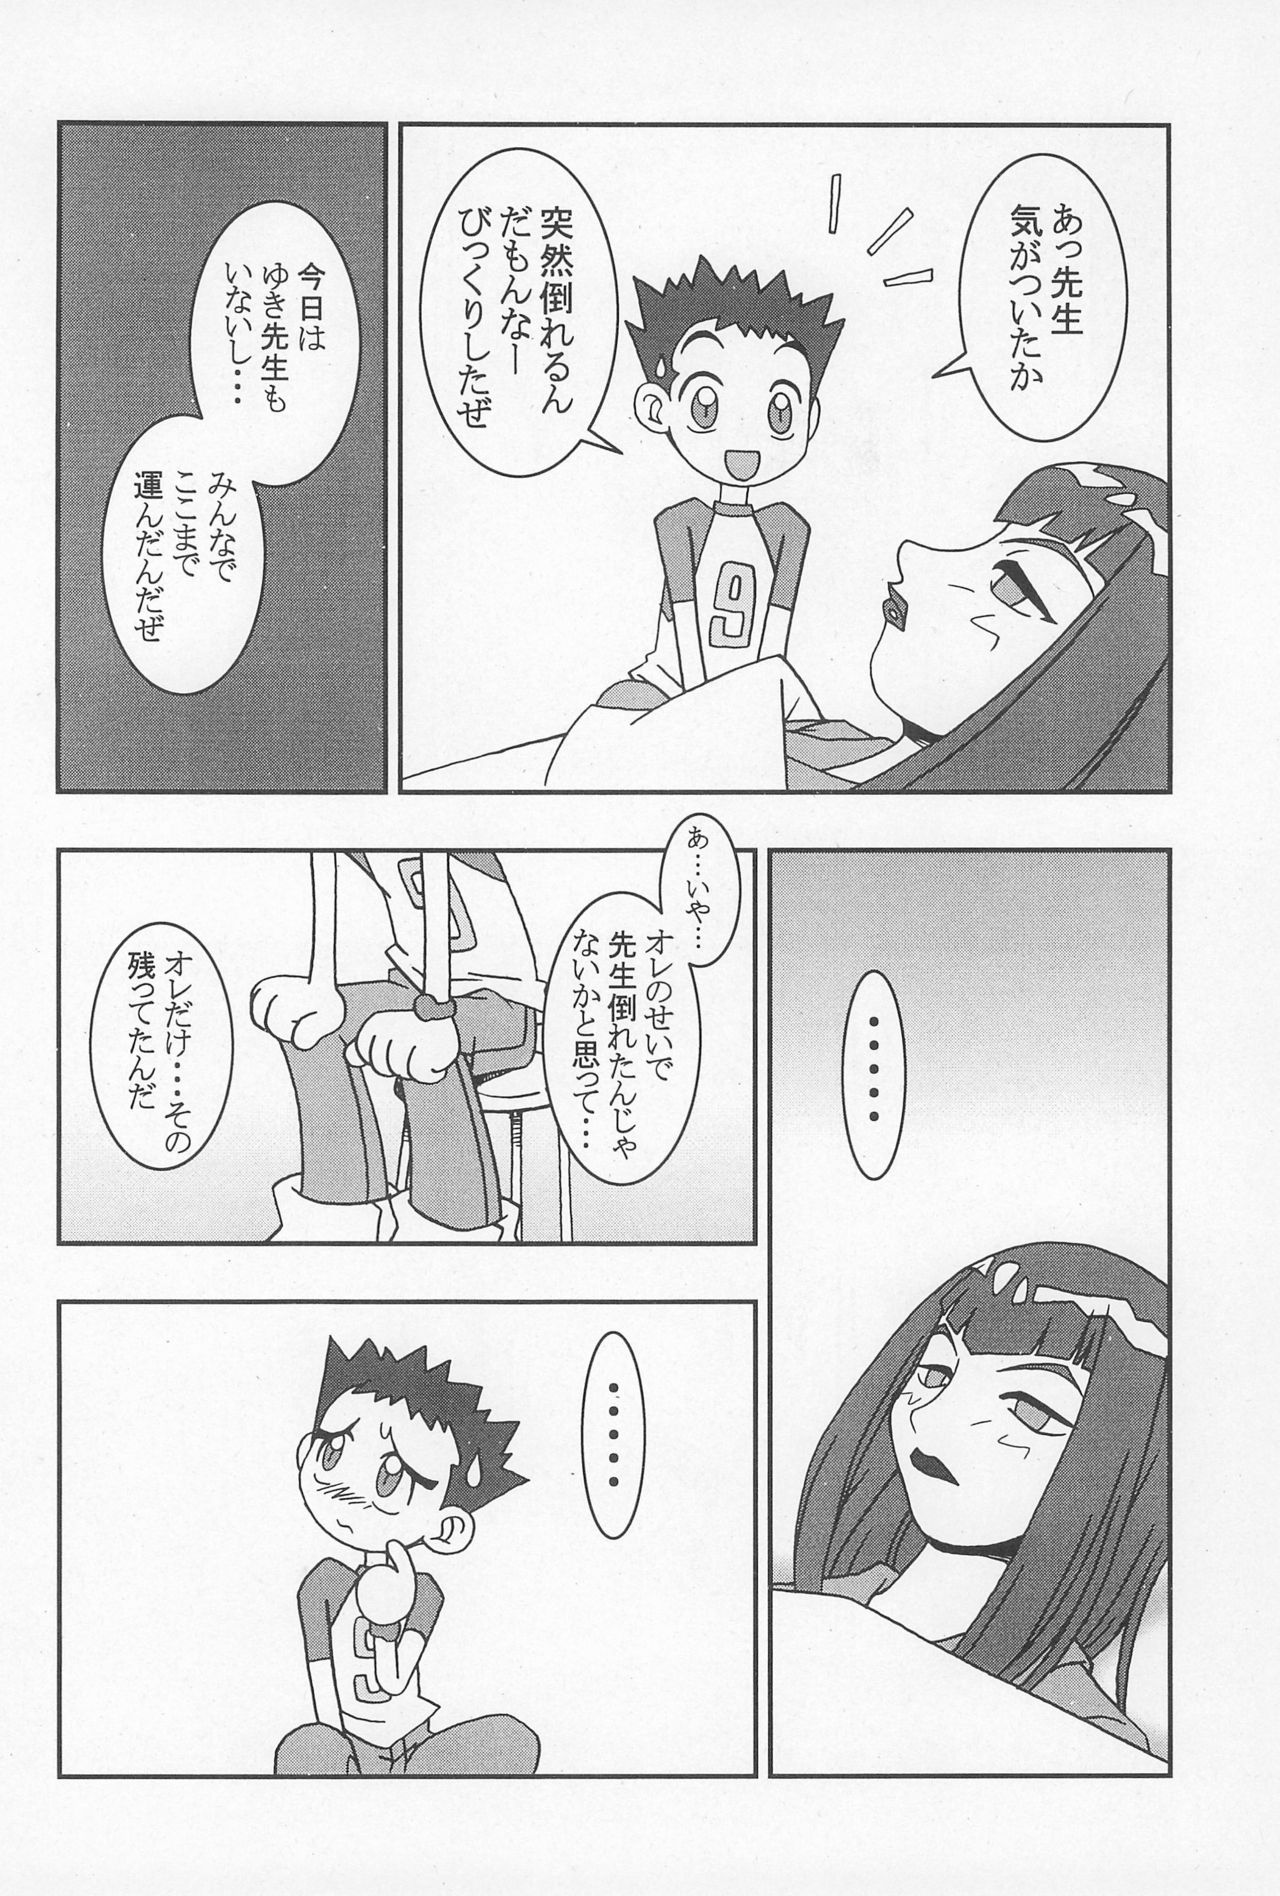 (CR25) [Nekketsu Kouenji Housoukyoku, KENIX (Katori Youichi, Ninnin!)] Doremi Fa So La Si Do (Ojamajo Doremi) page 24 full